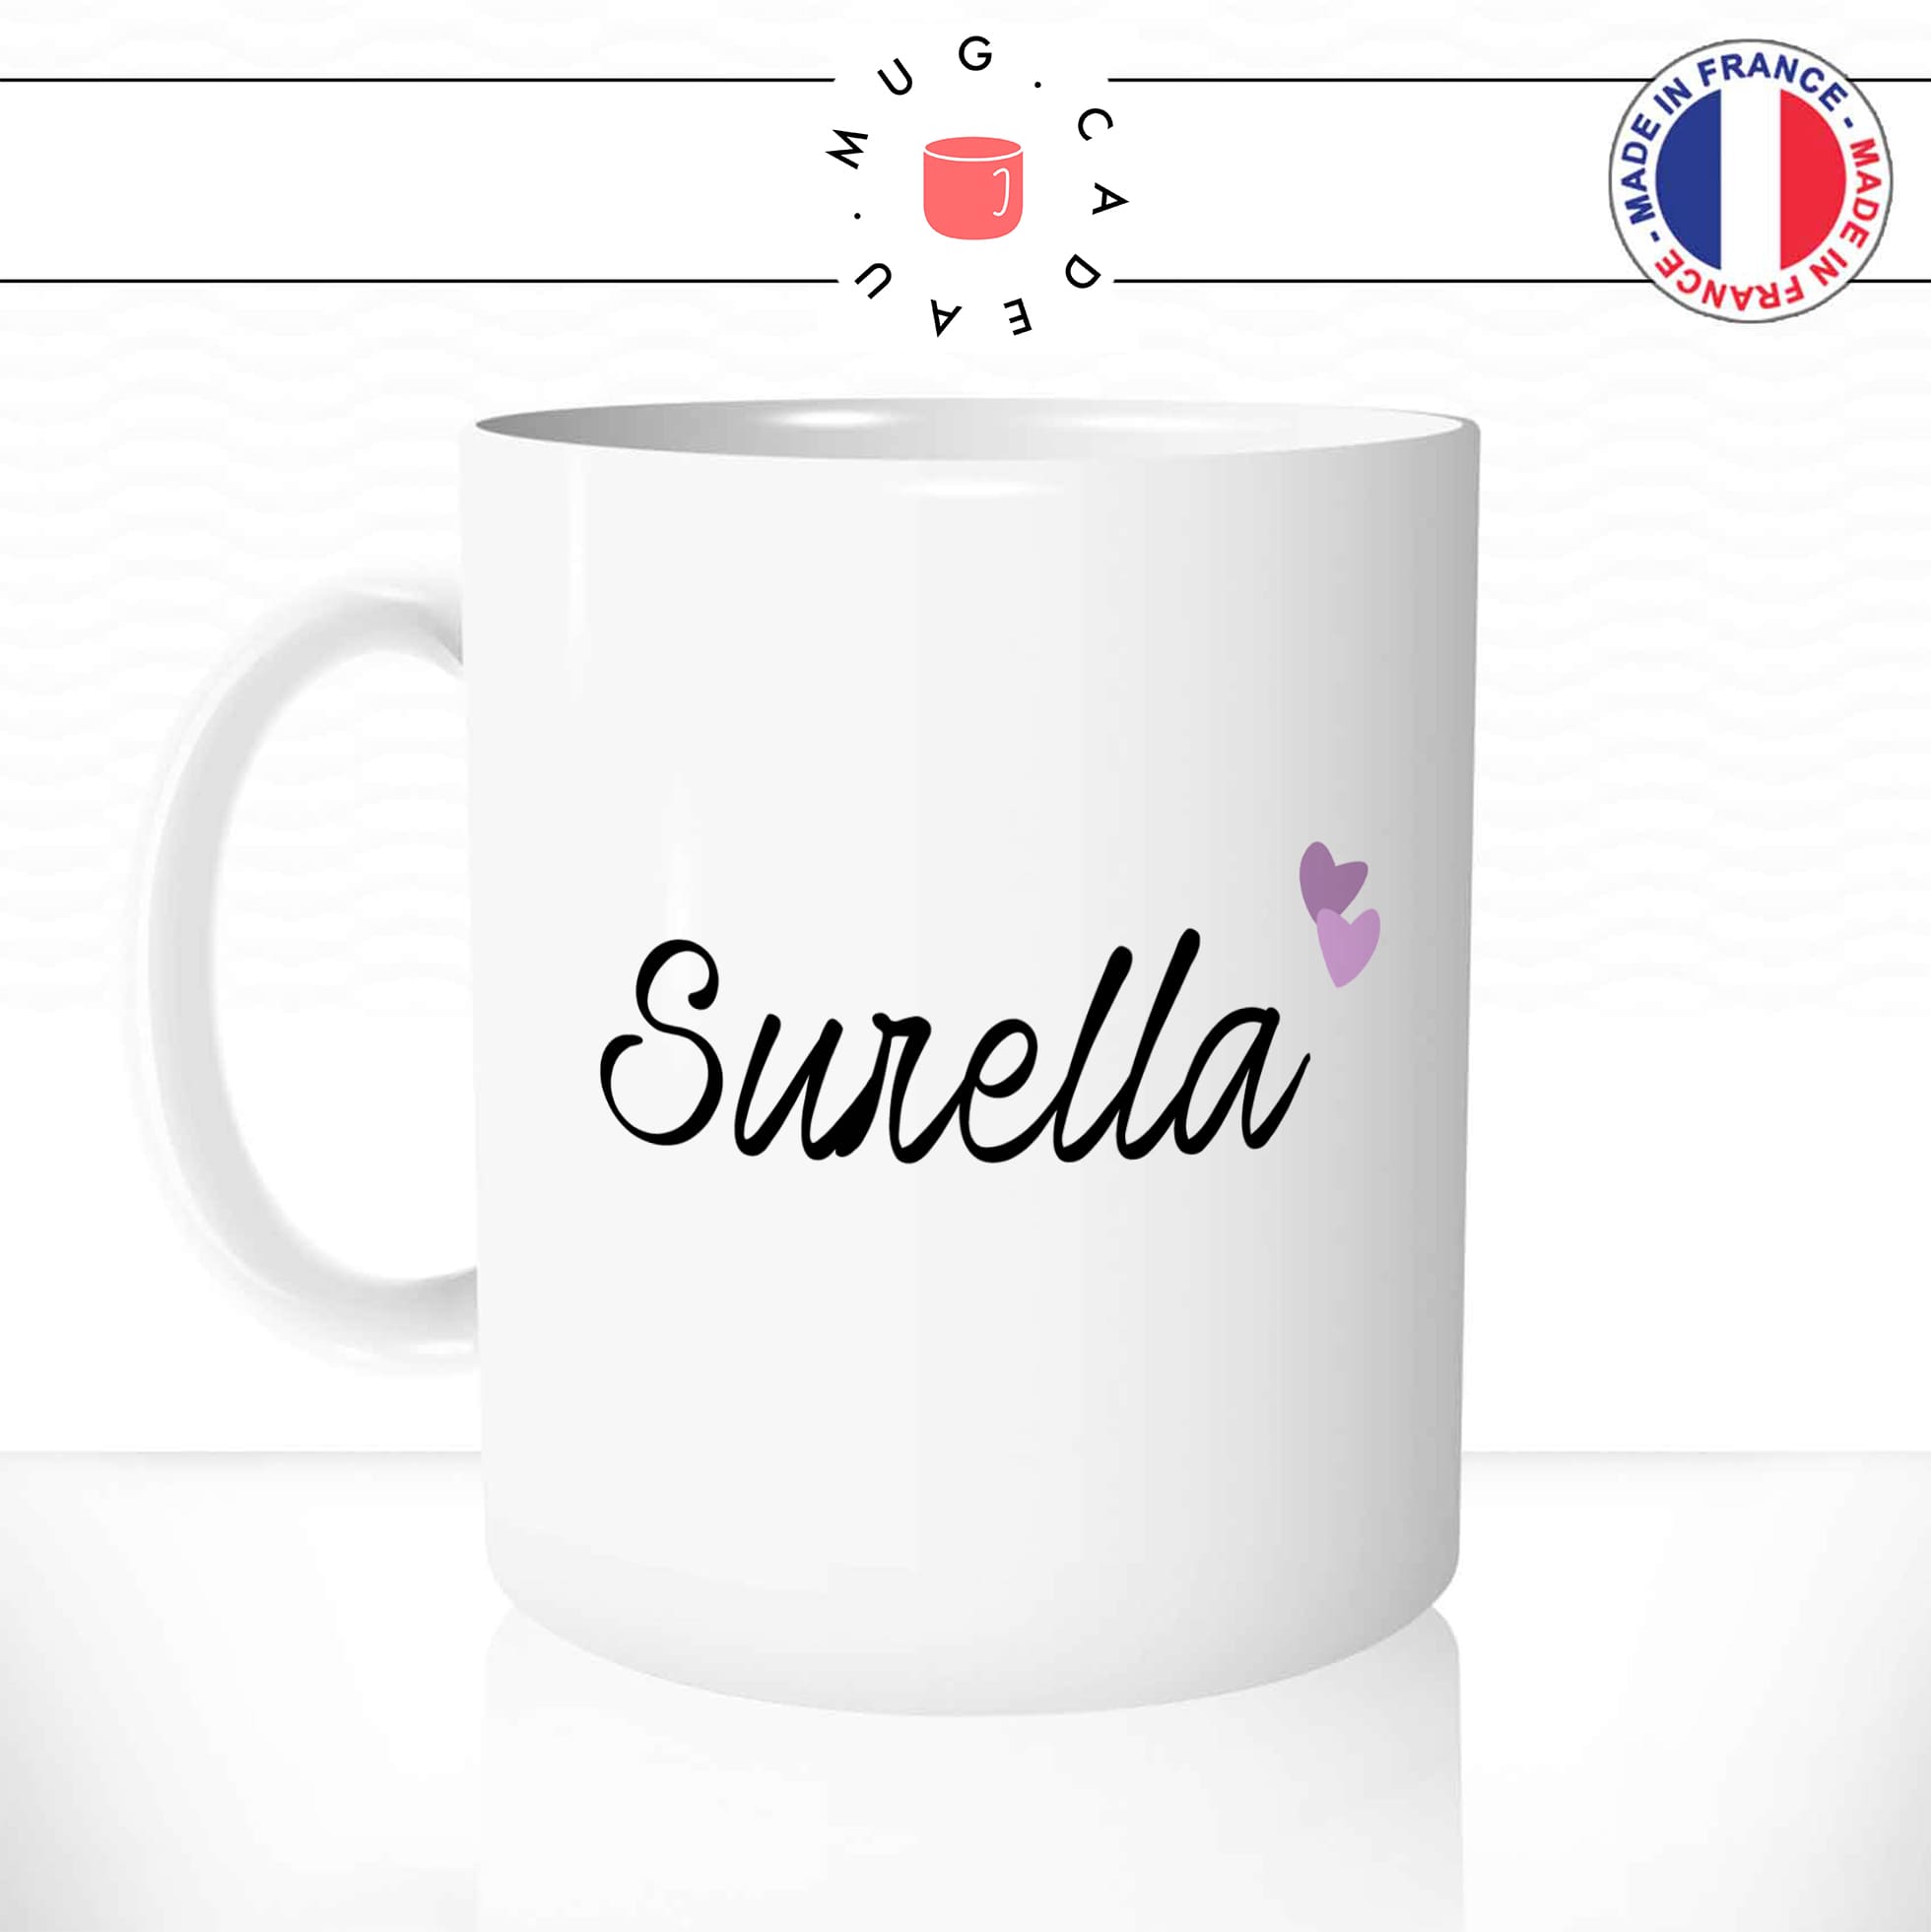 mug-tasse-blanc-unique-surella-soeur-corse-corsica-langue-homme-femme-famille-humour-fun-cool-idée-cadeau-original-personnalisé